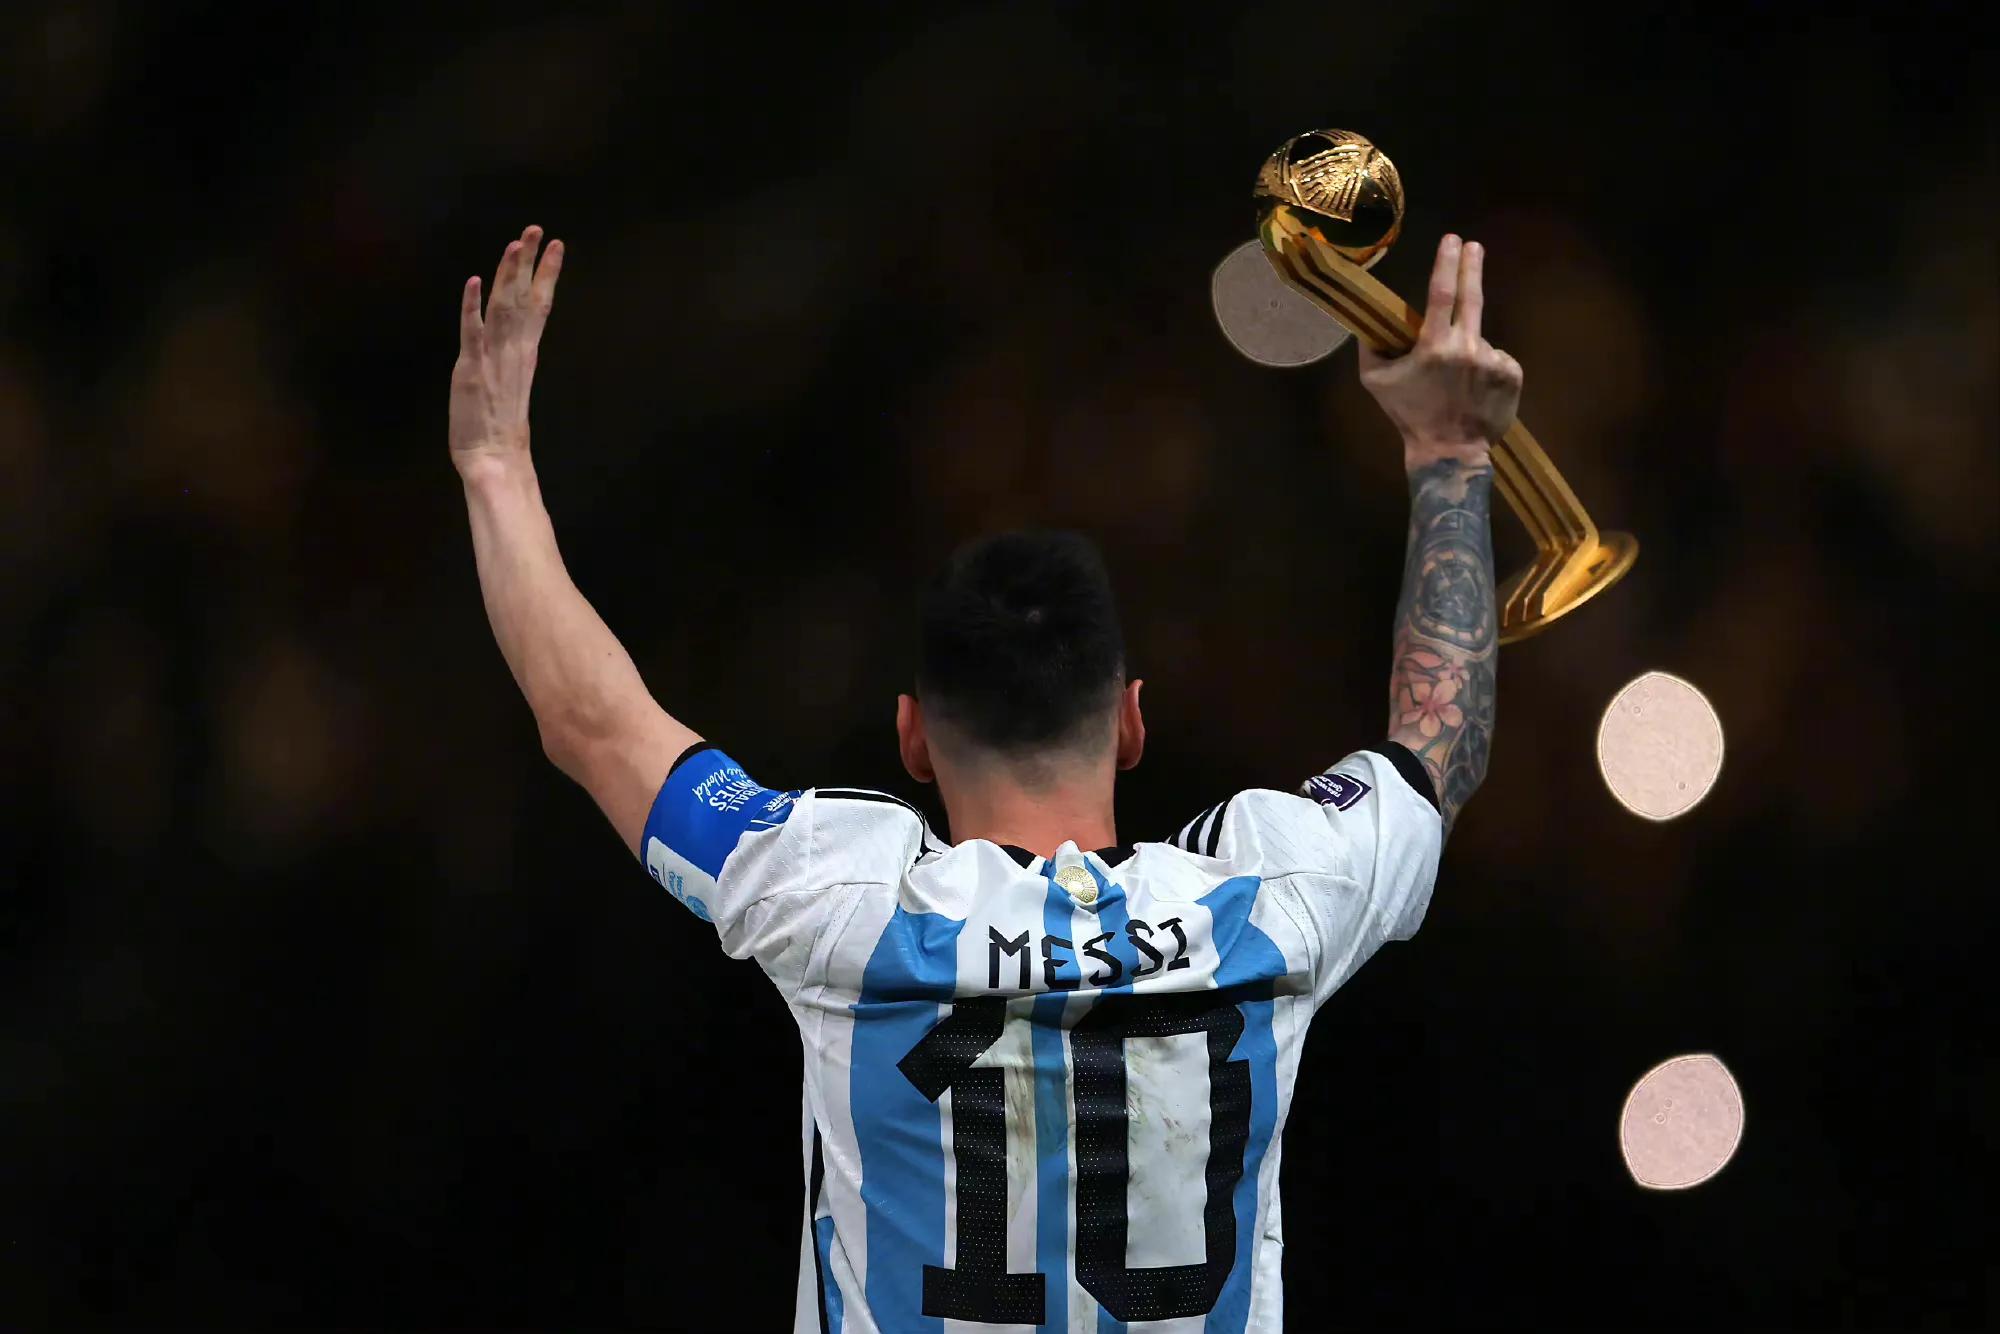 阿根廷7-5战胜法国 赢得本届世界杯冠军